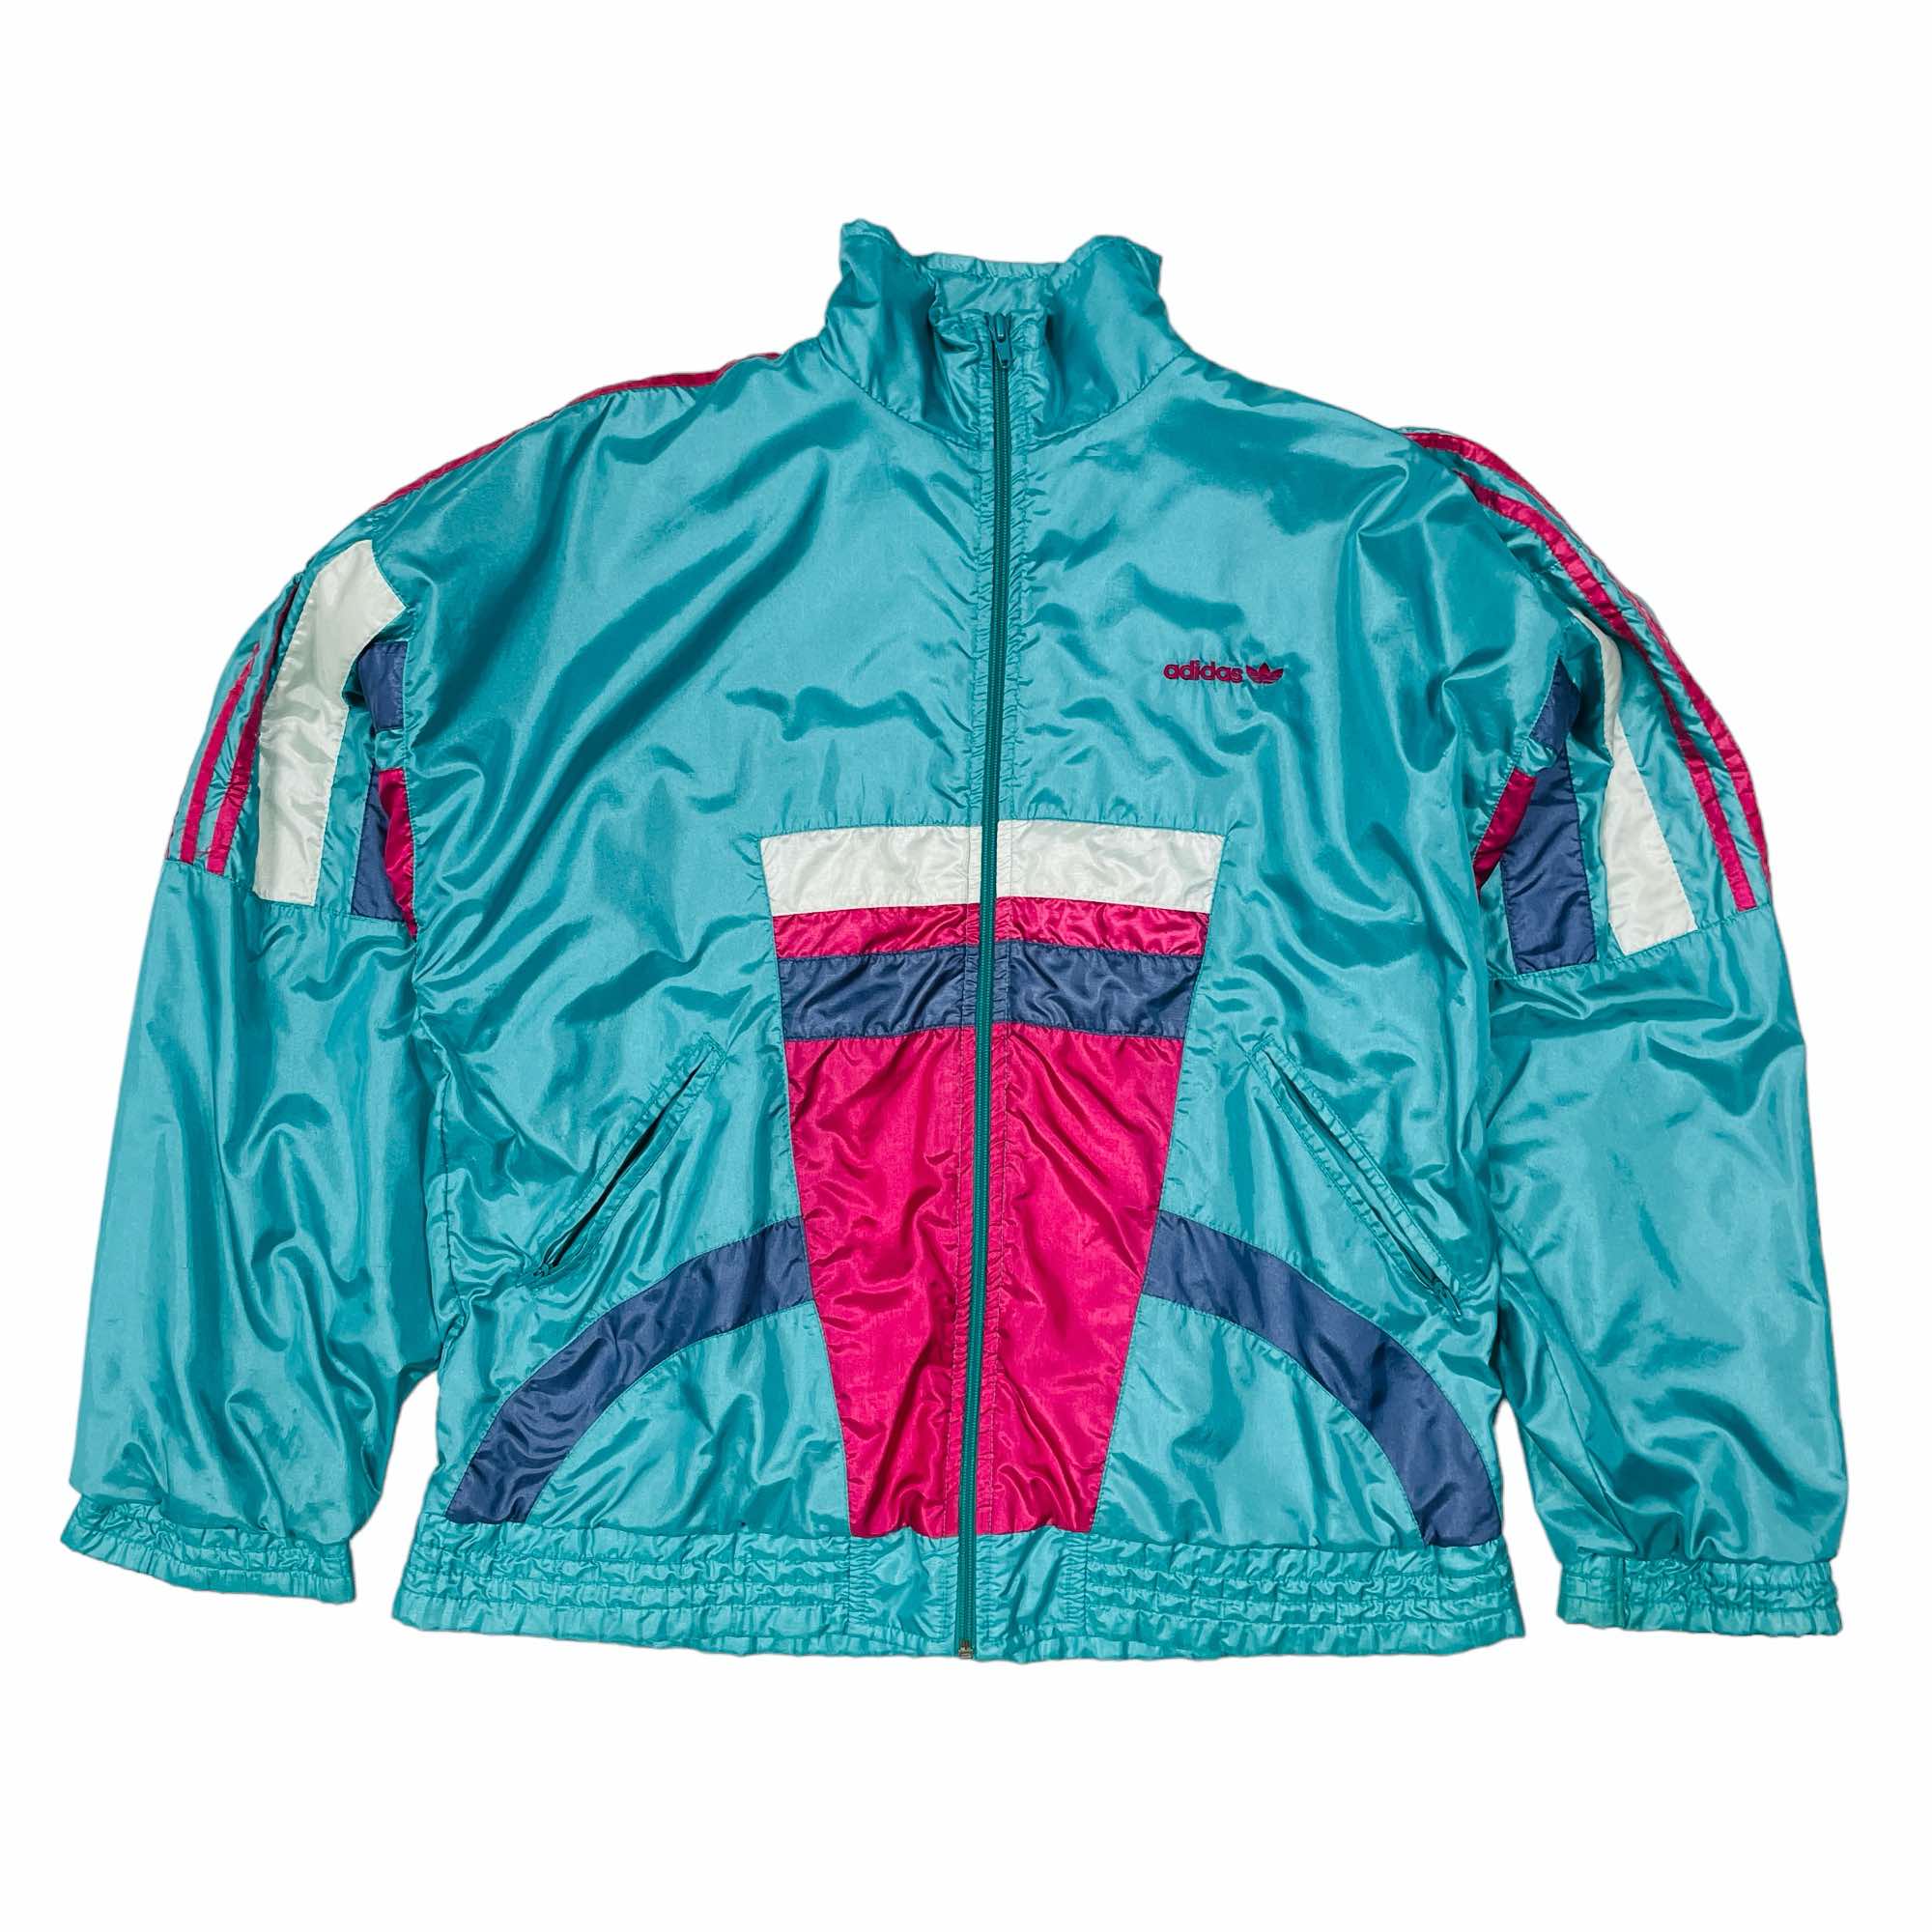 90s Adidas Track Jacket - Medium